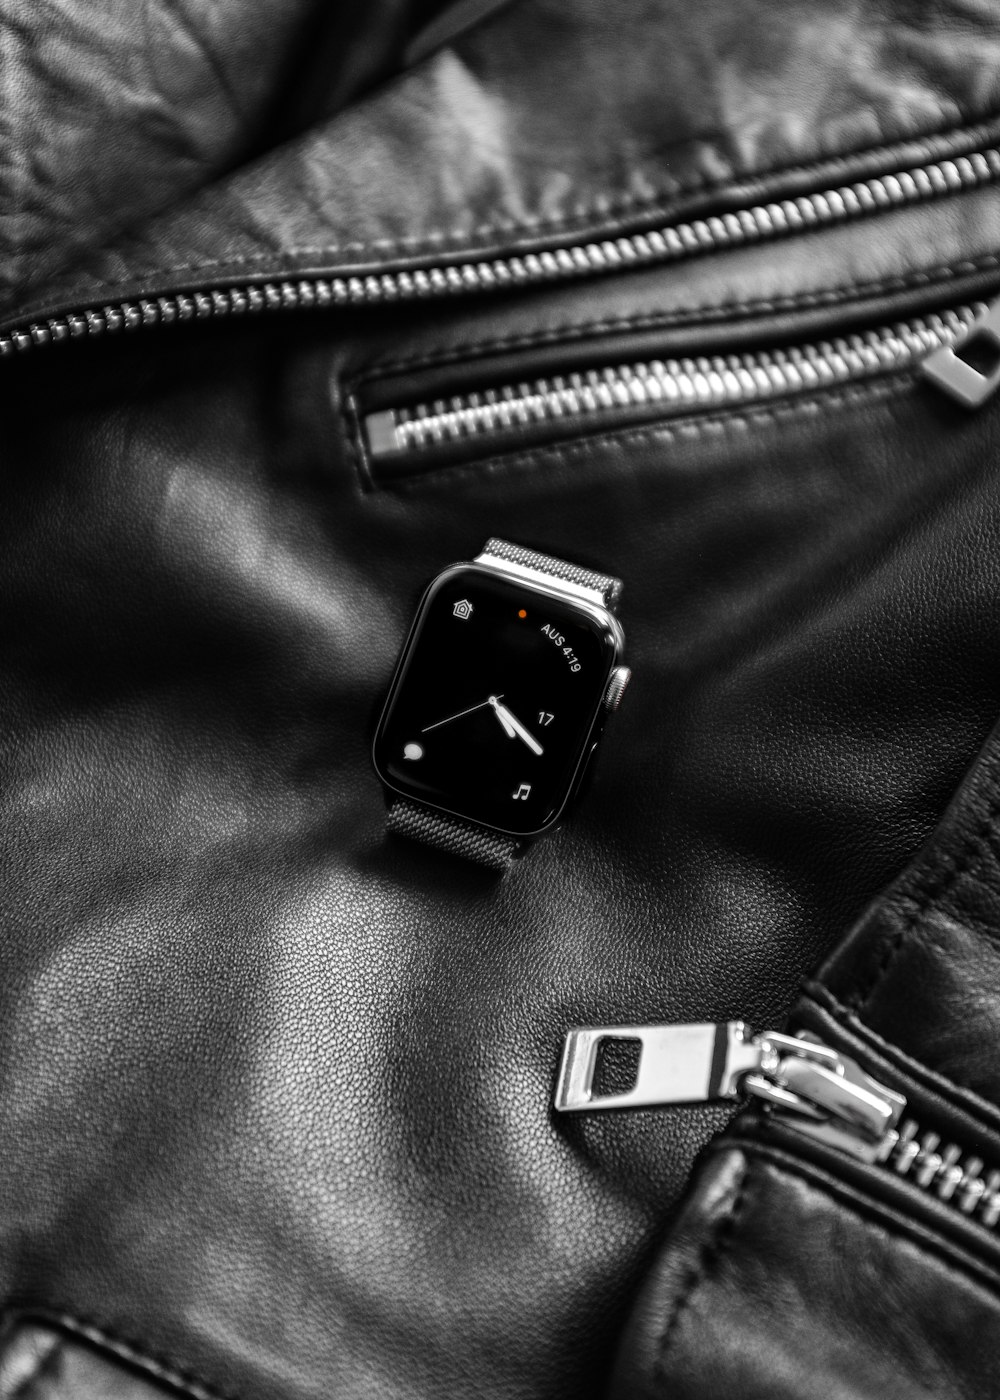 smartwatch preto em cima da jaqueta de couro preta